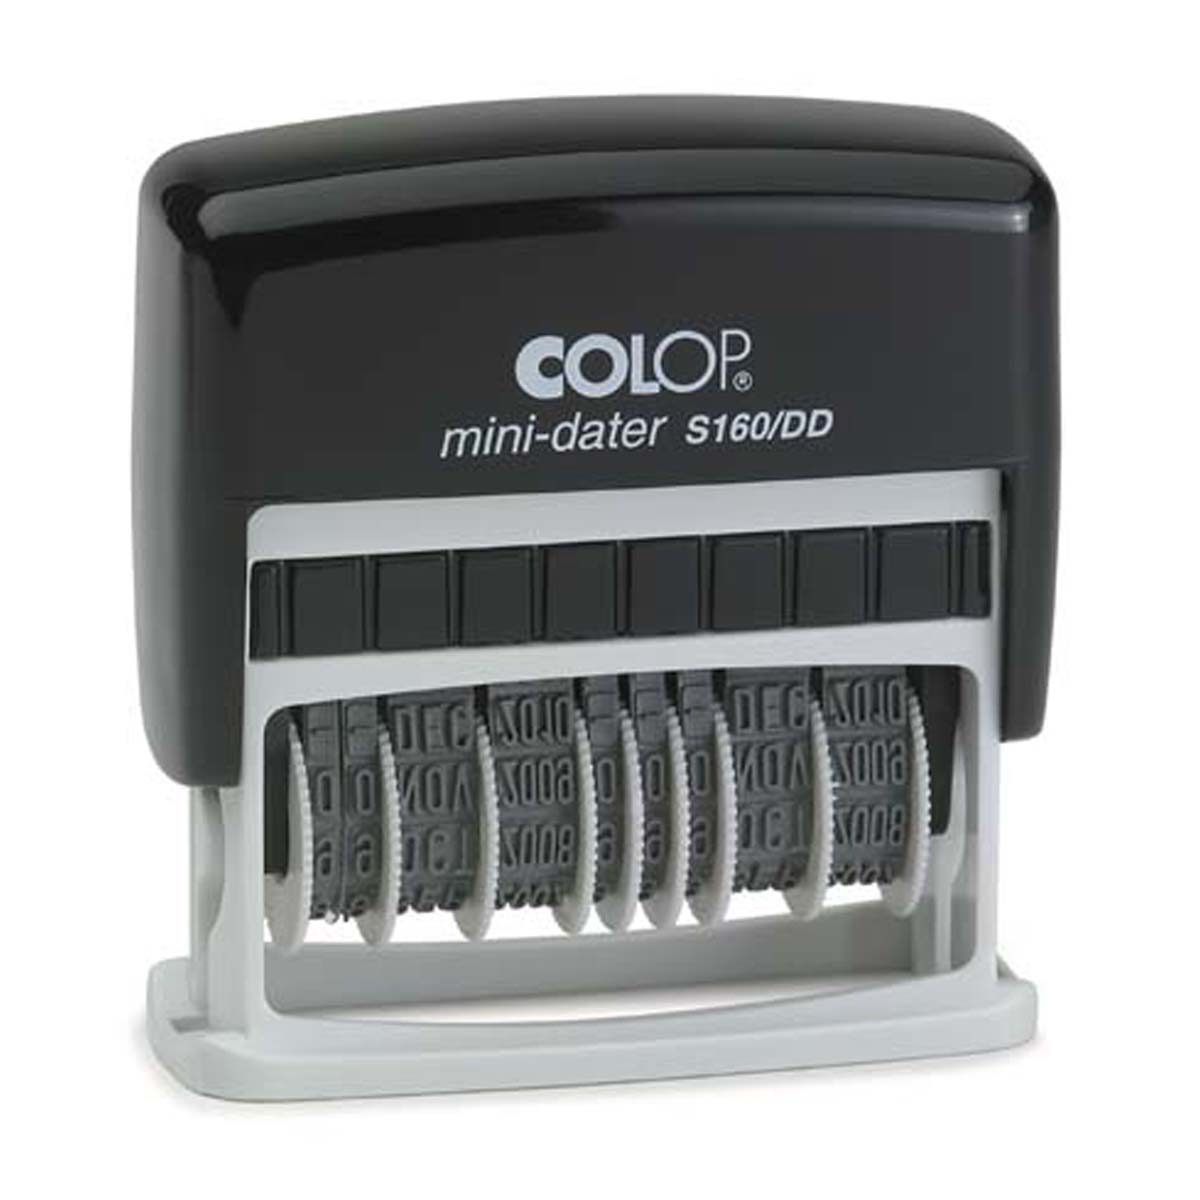 Colop Mini Dater S160/DD